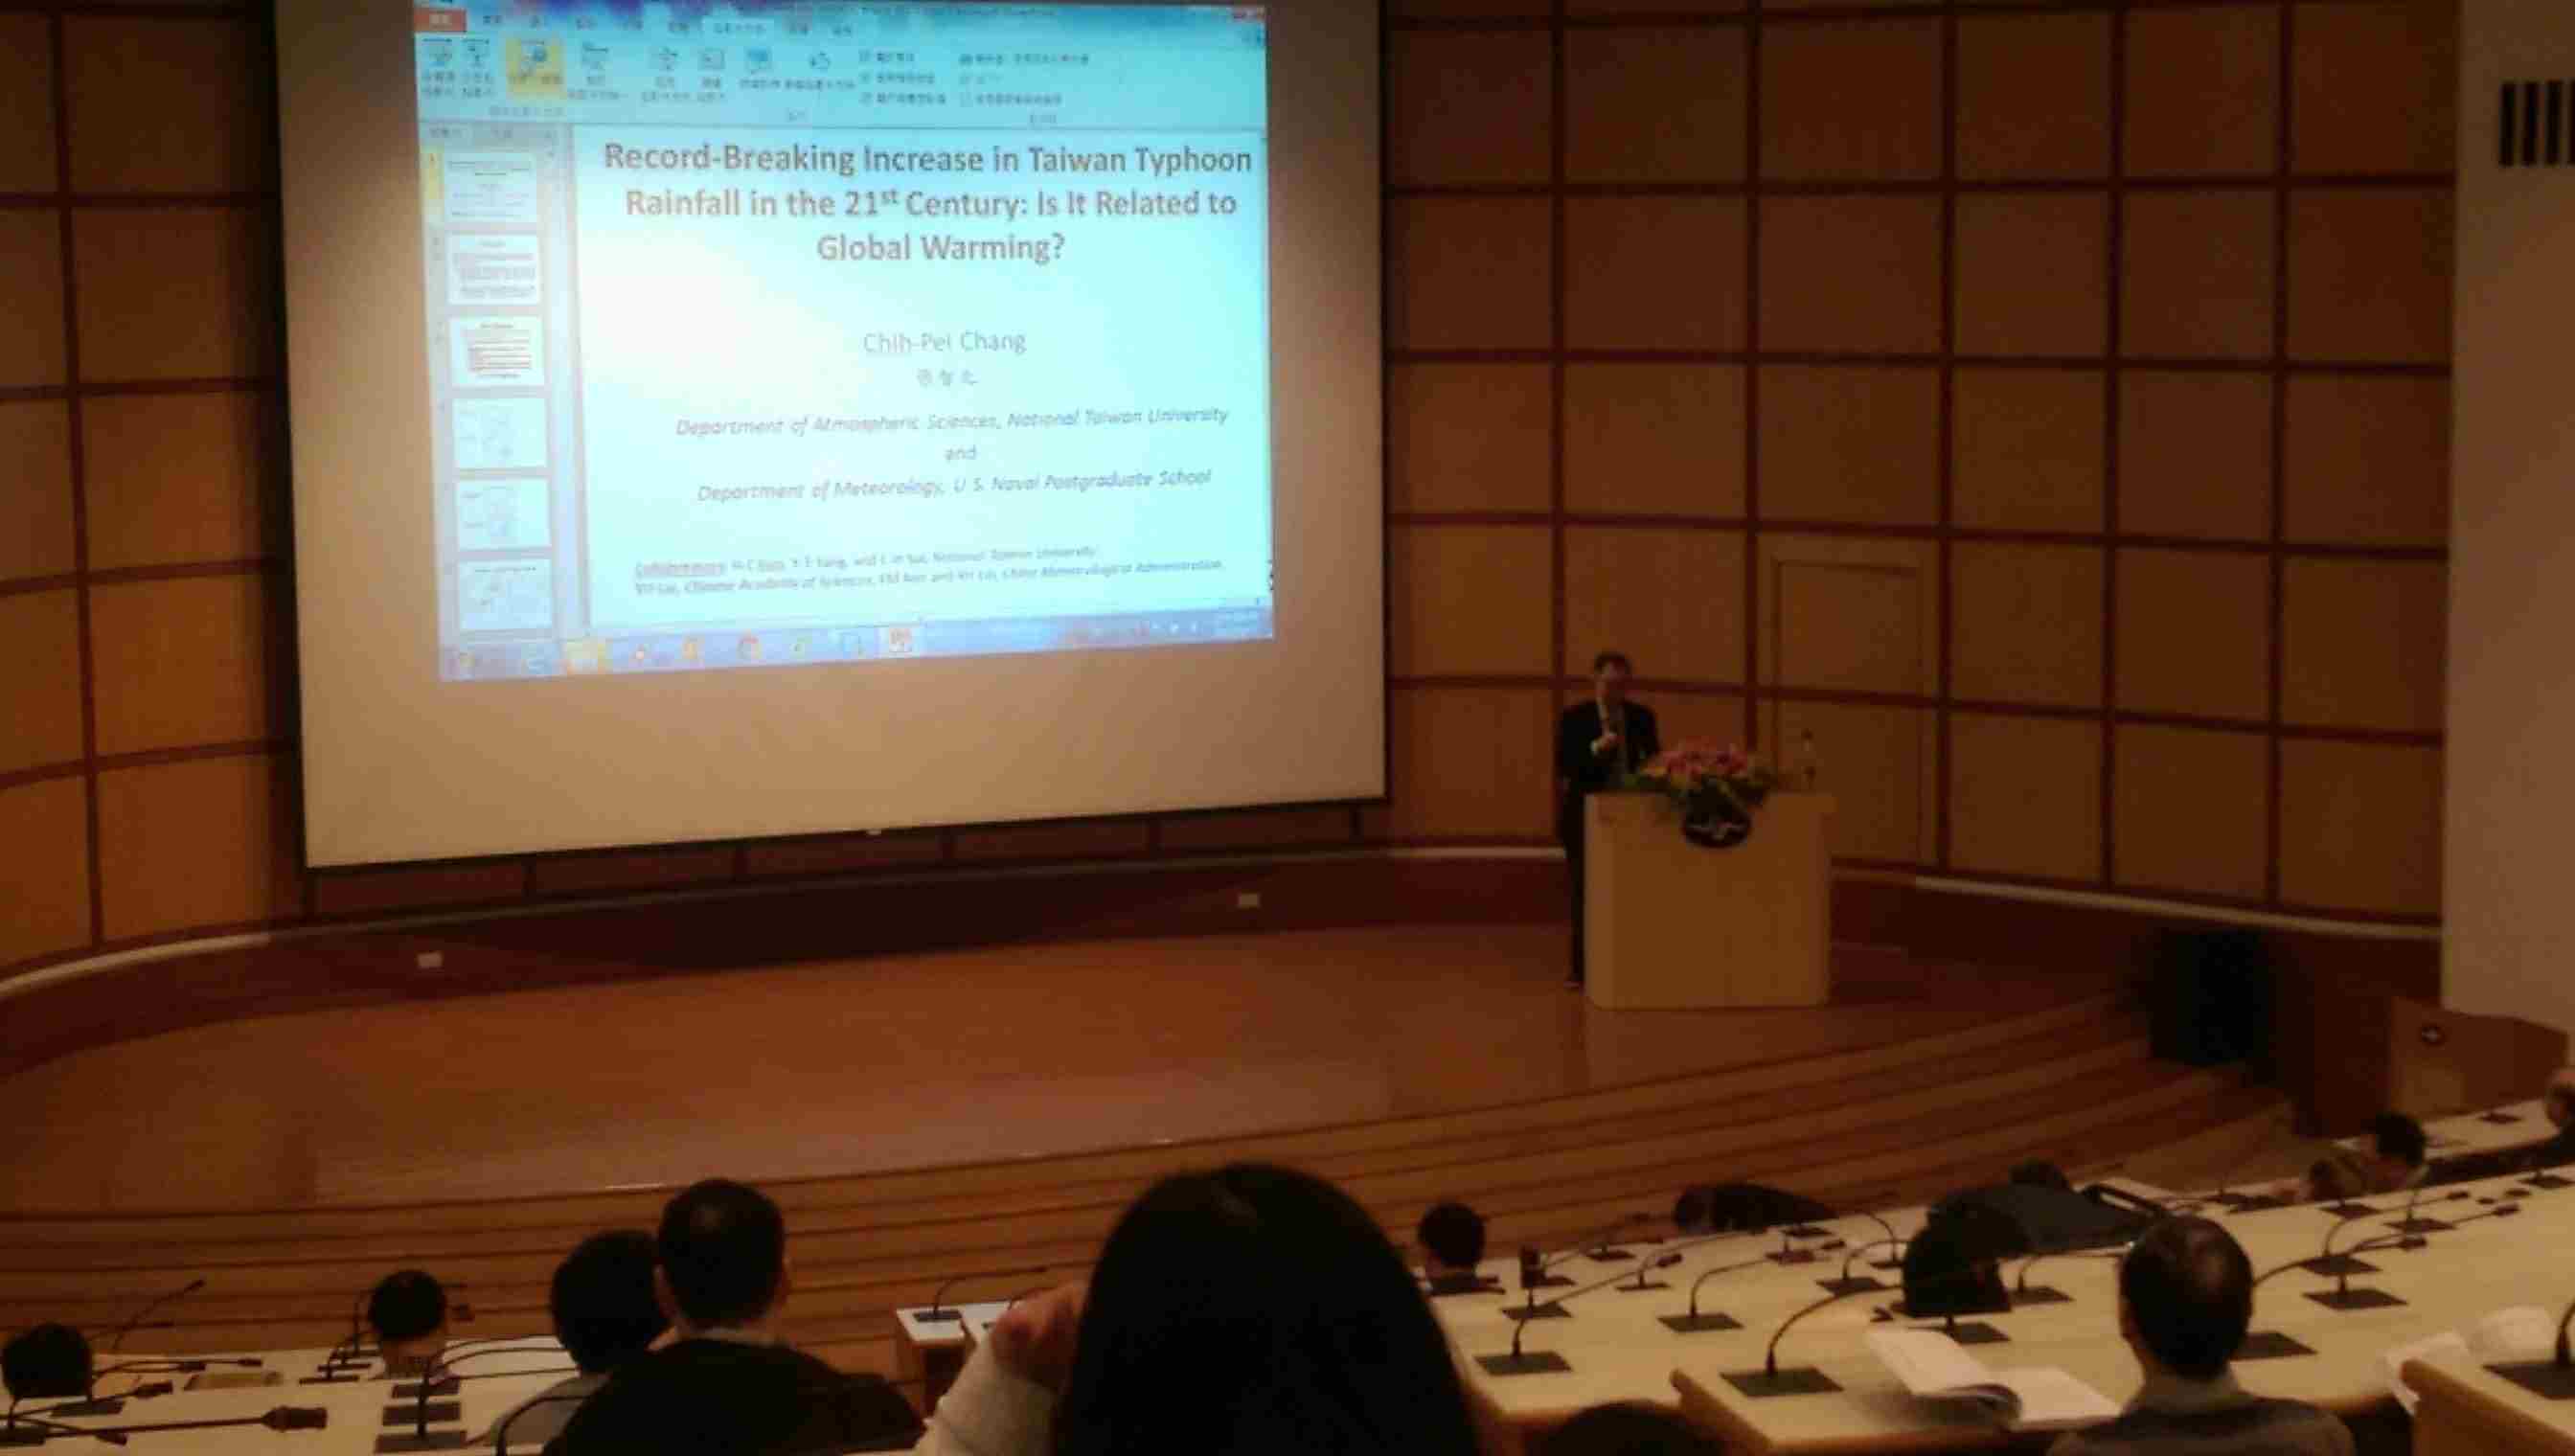 國立台灣大學大氣科學系張智北教授進行特邀演講